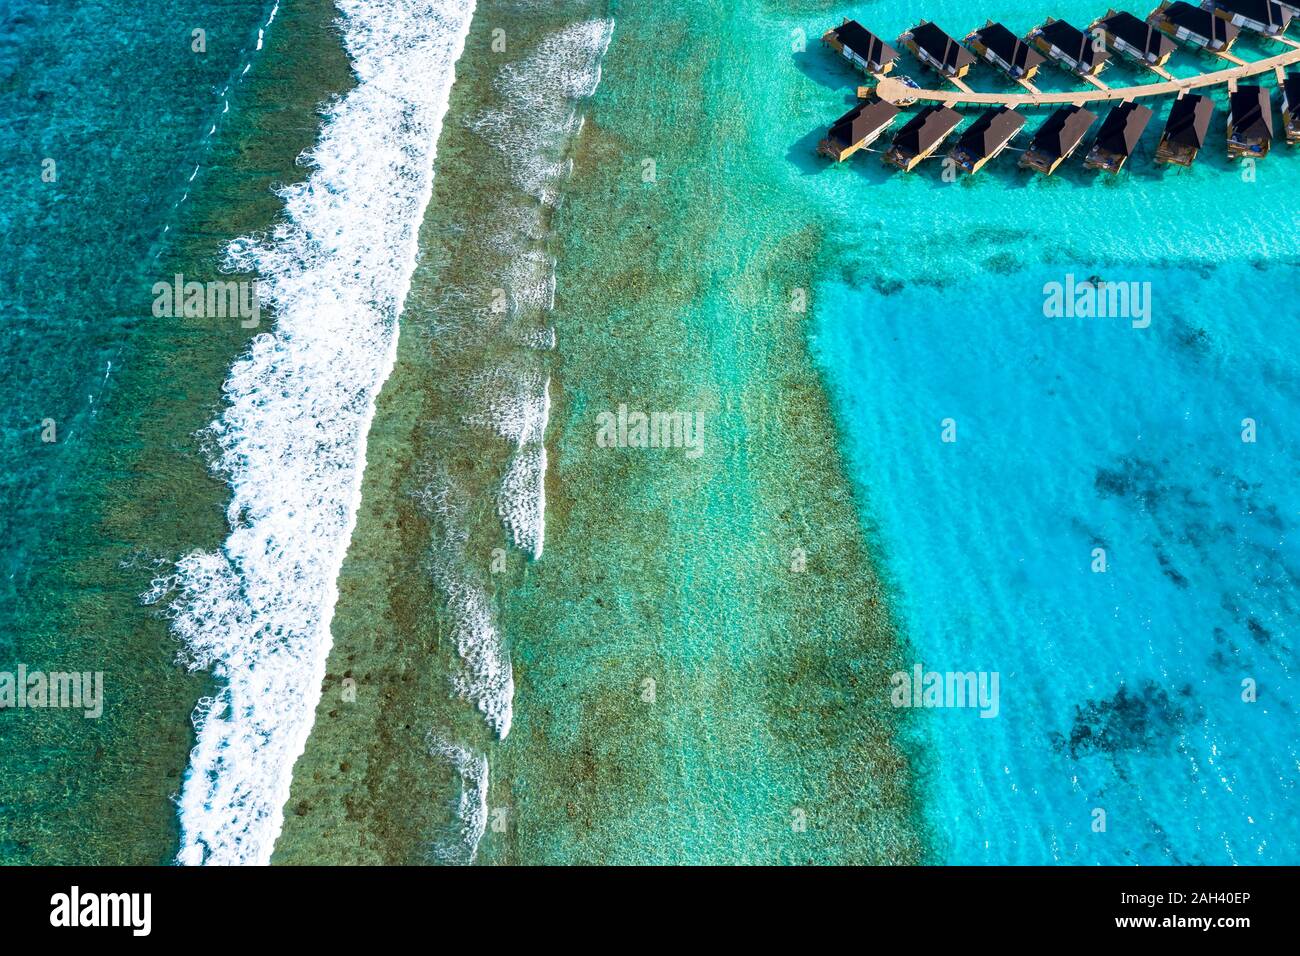 Maldive, South Male Atoll, veduta aerea della barriera corallina Foto Stock